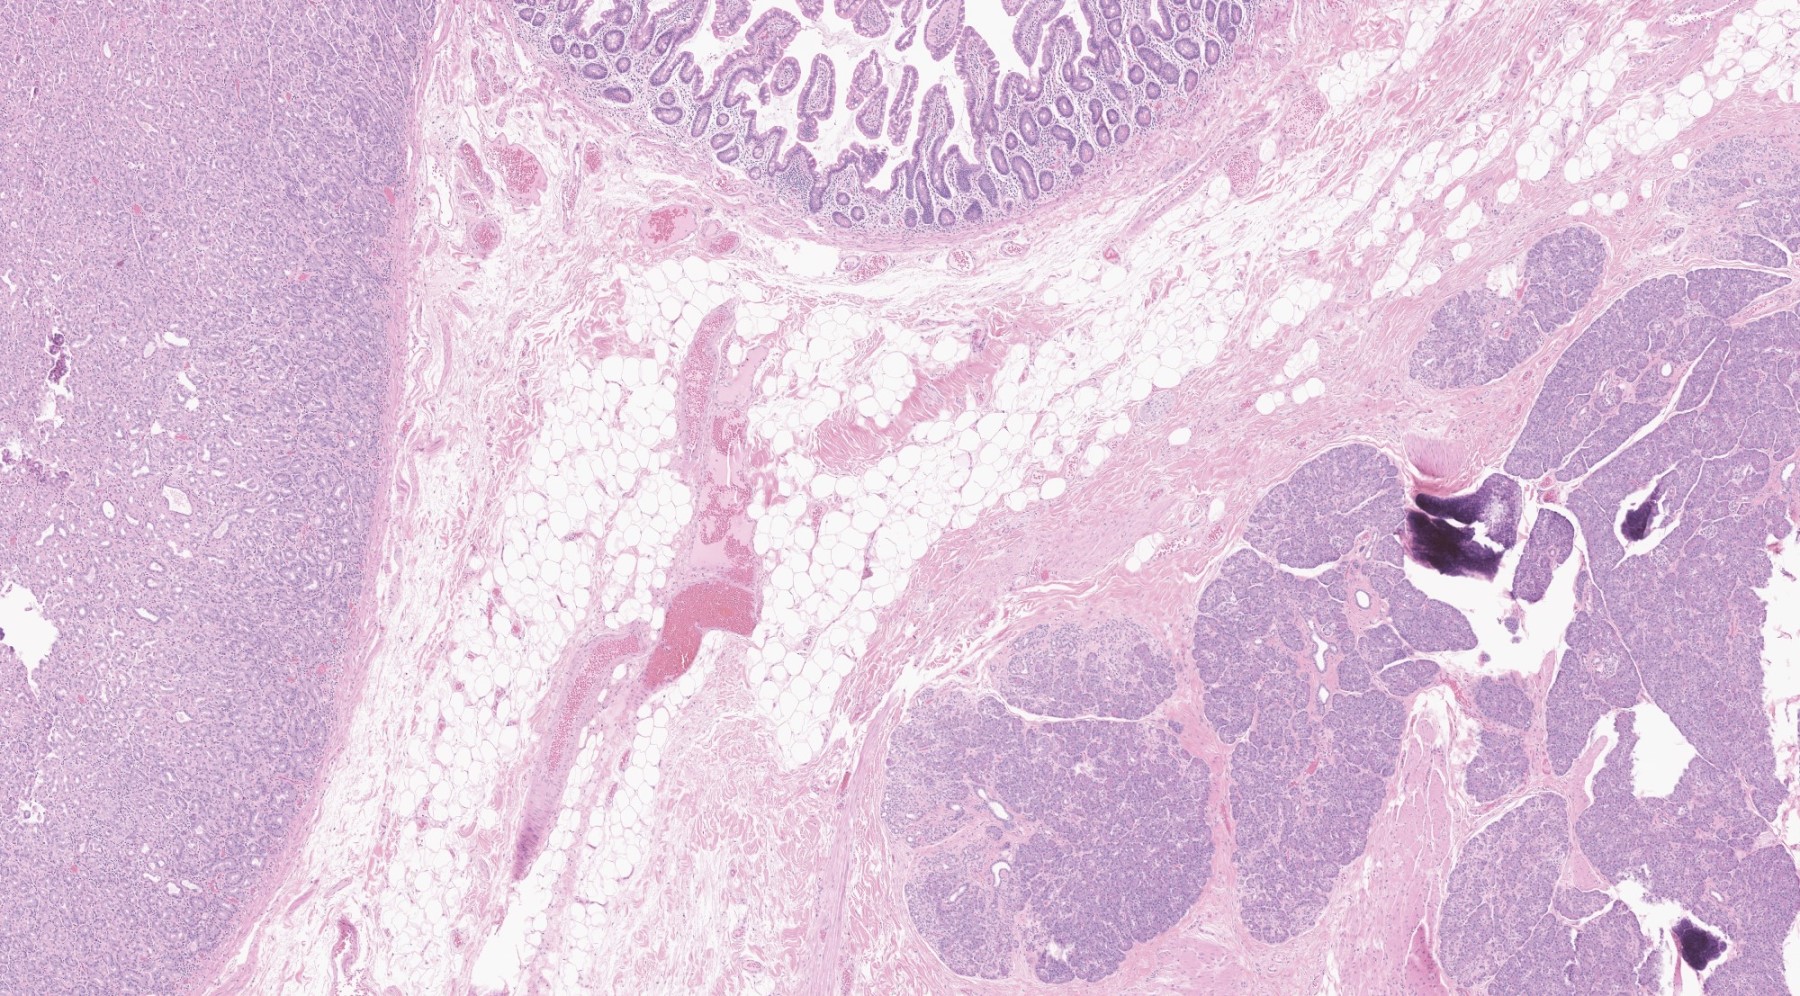 Meckel diverticulum with heterotopia